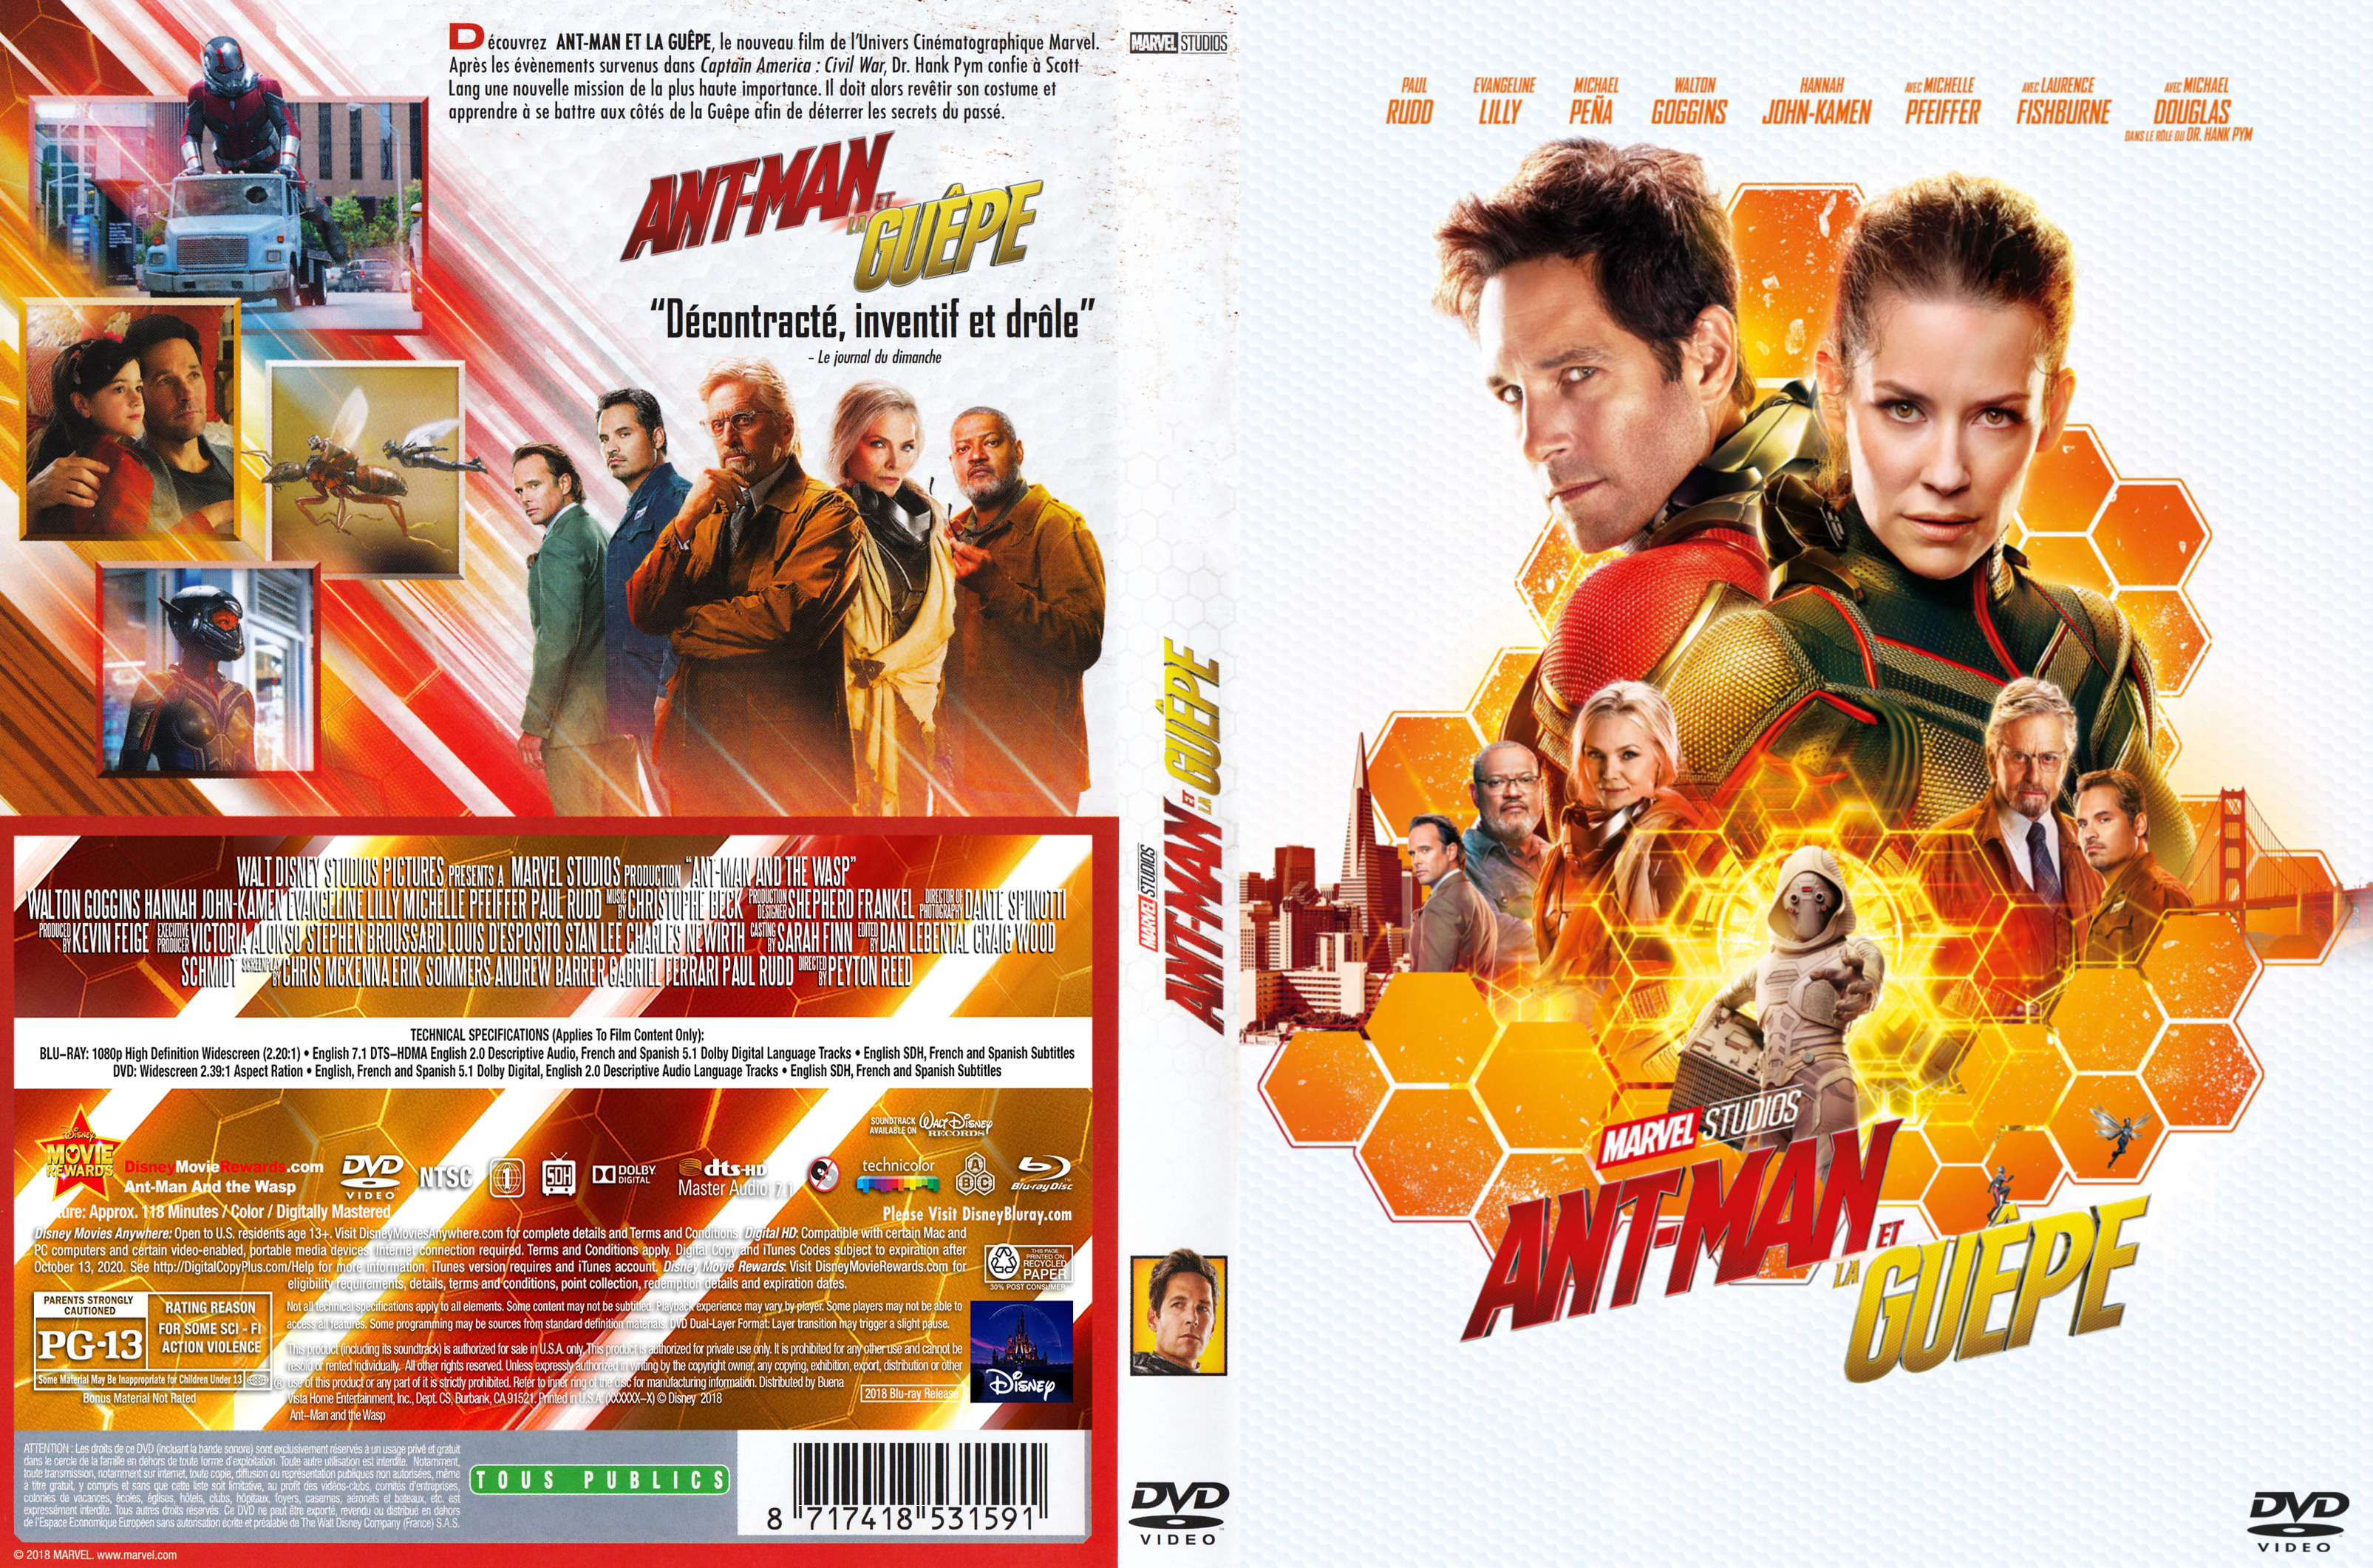 Jaquette DVD Ant-man et la guepe custom